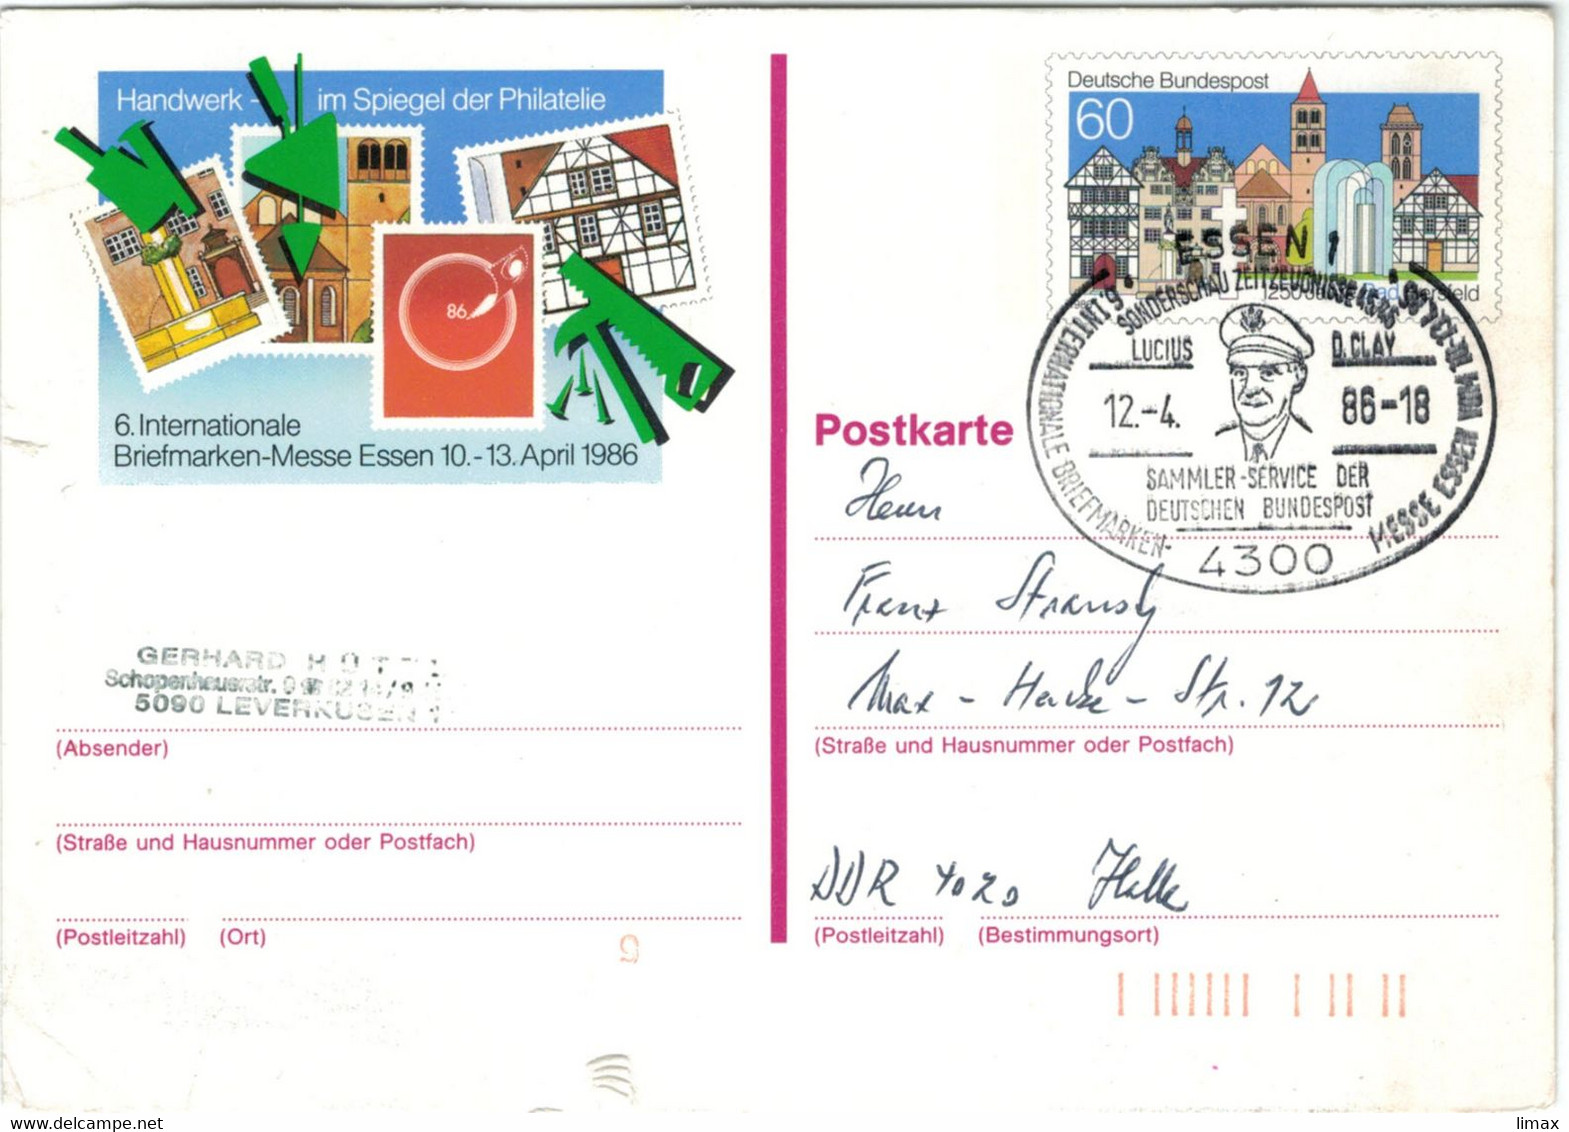 Ganzsache Briefmarkenmesse Essen 1986 - Lucius D. Clay Vgl. Gegen Morgenthauplan - Berliner Luftbrücke - Freiheitsglocke - Private Postcards - Used